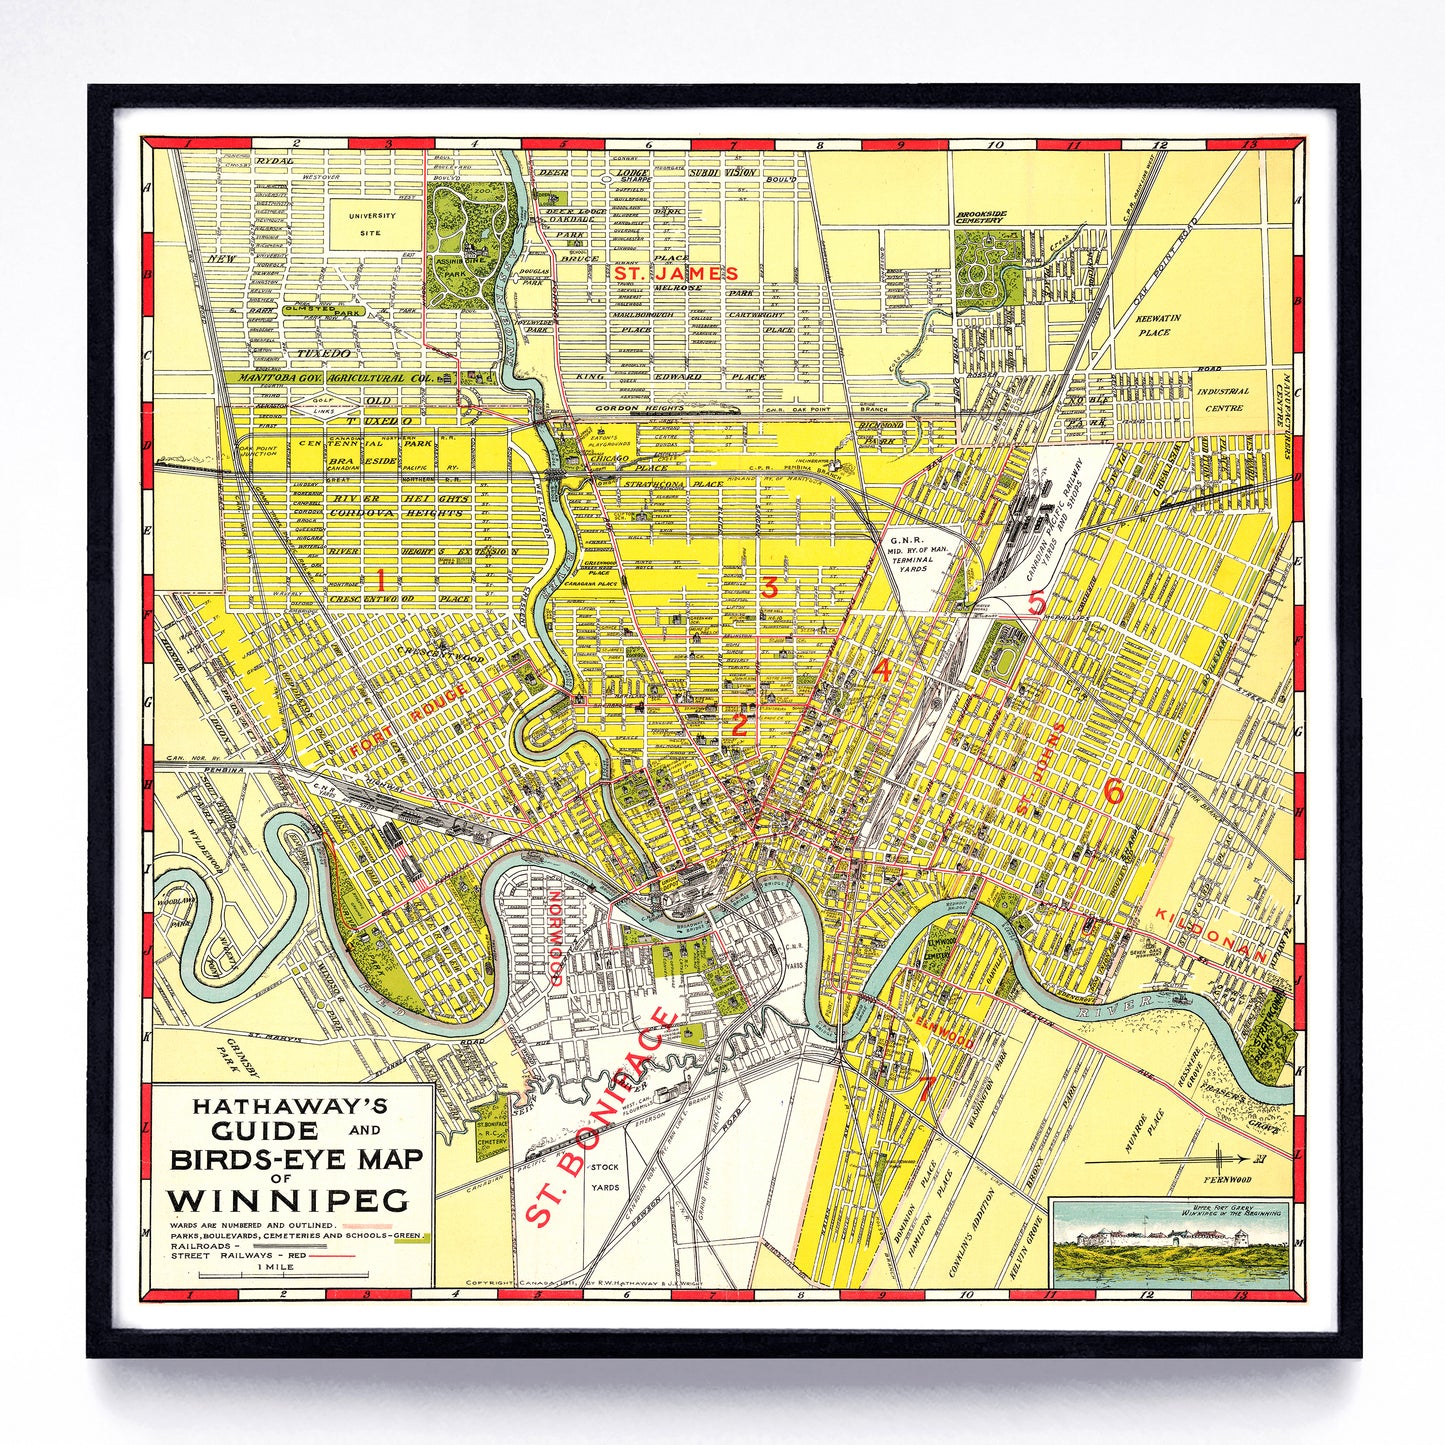 “Hathaway's Guide & Birds-Eye Map of Winnipeg” print by R. W. Hathaway & J. K. Wright (1911)